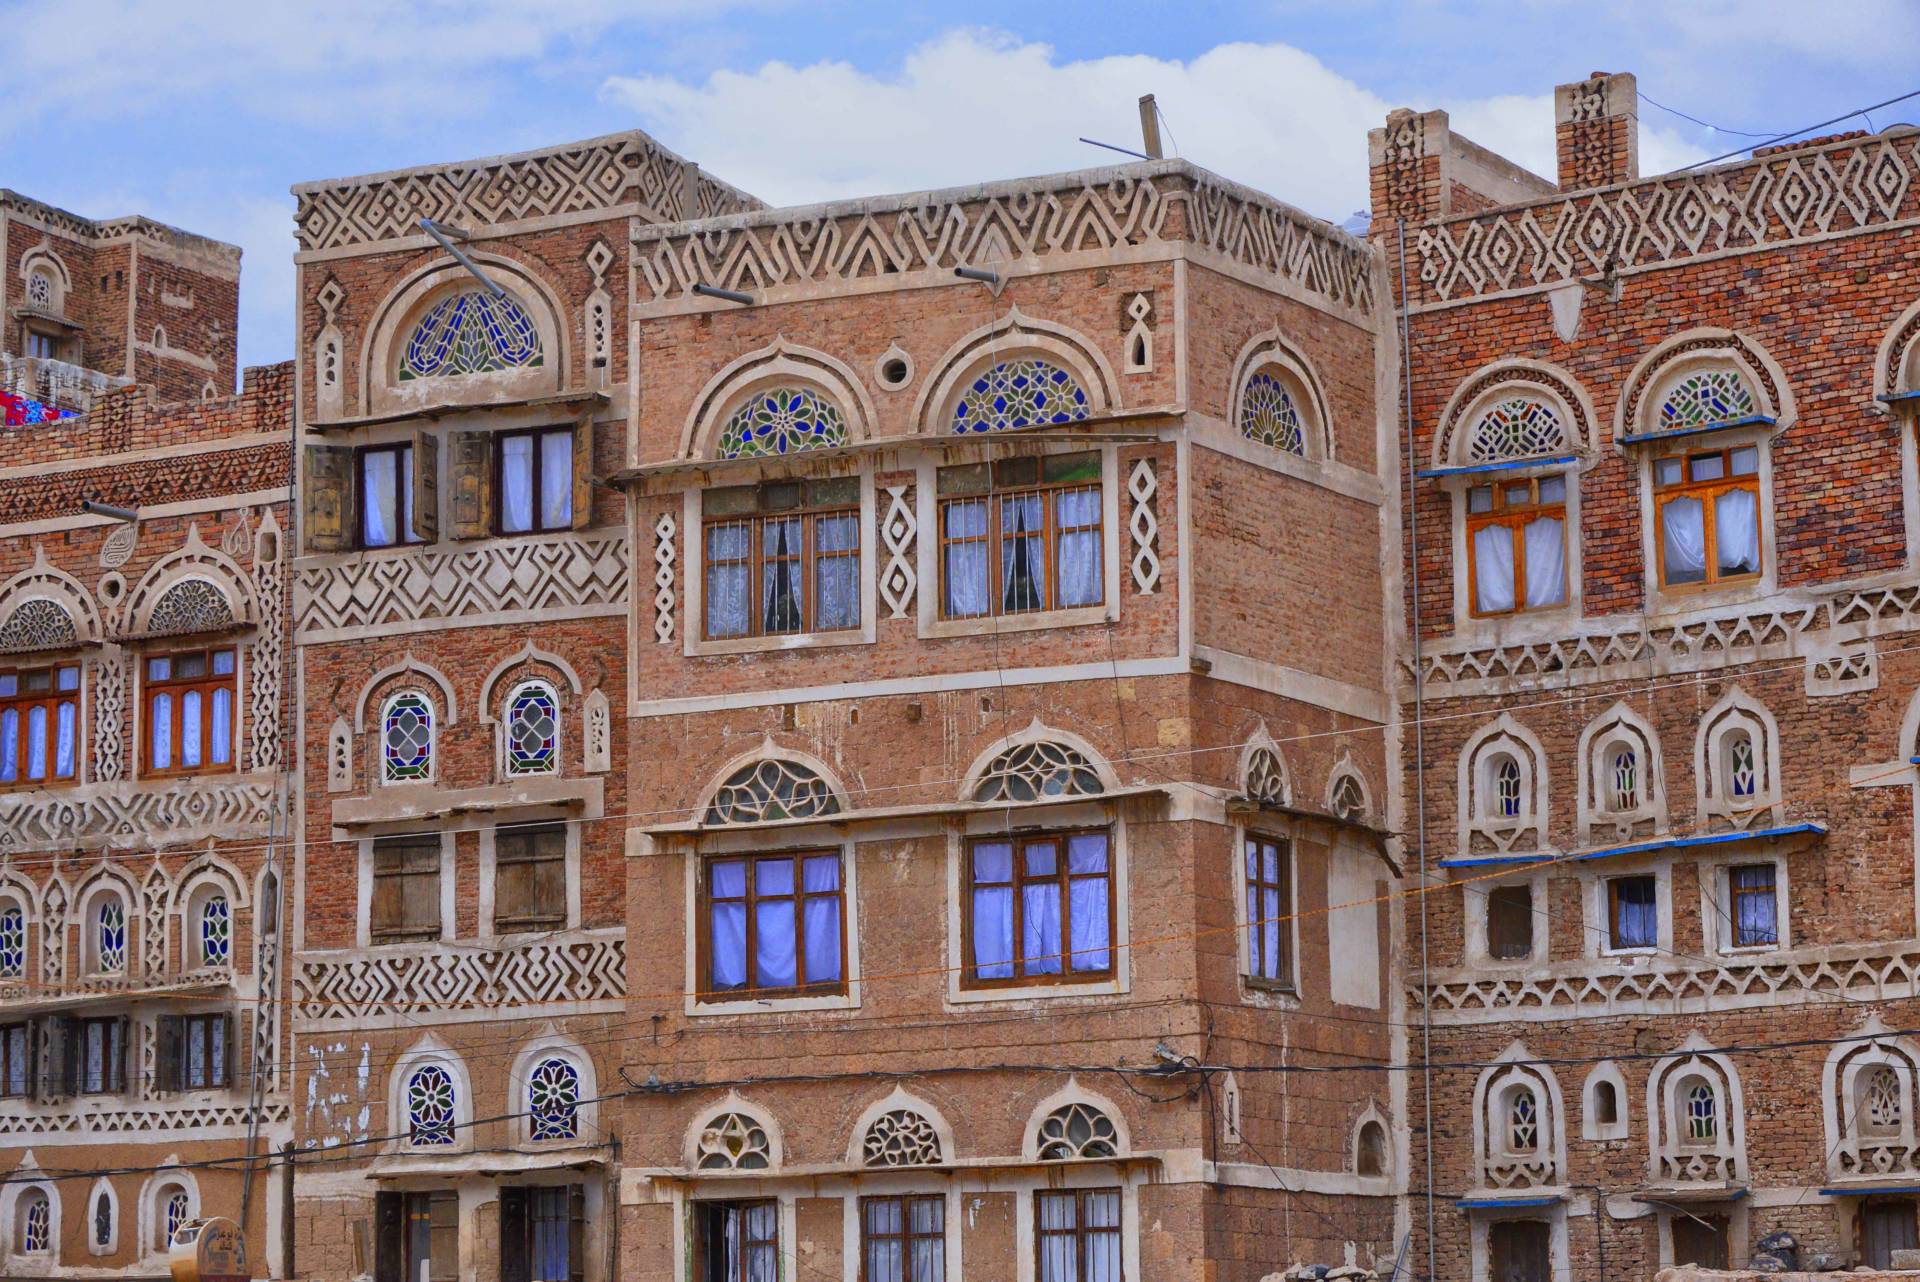 Houses in Sanaa, Yemen. Wikicommons